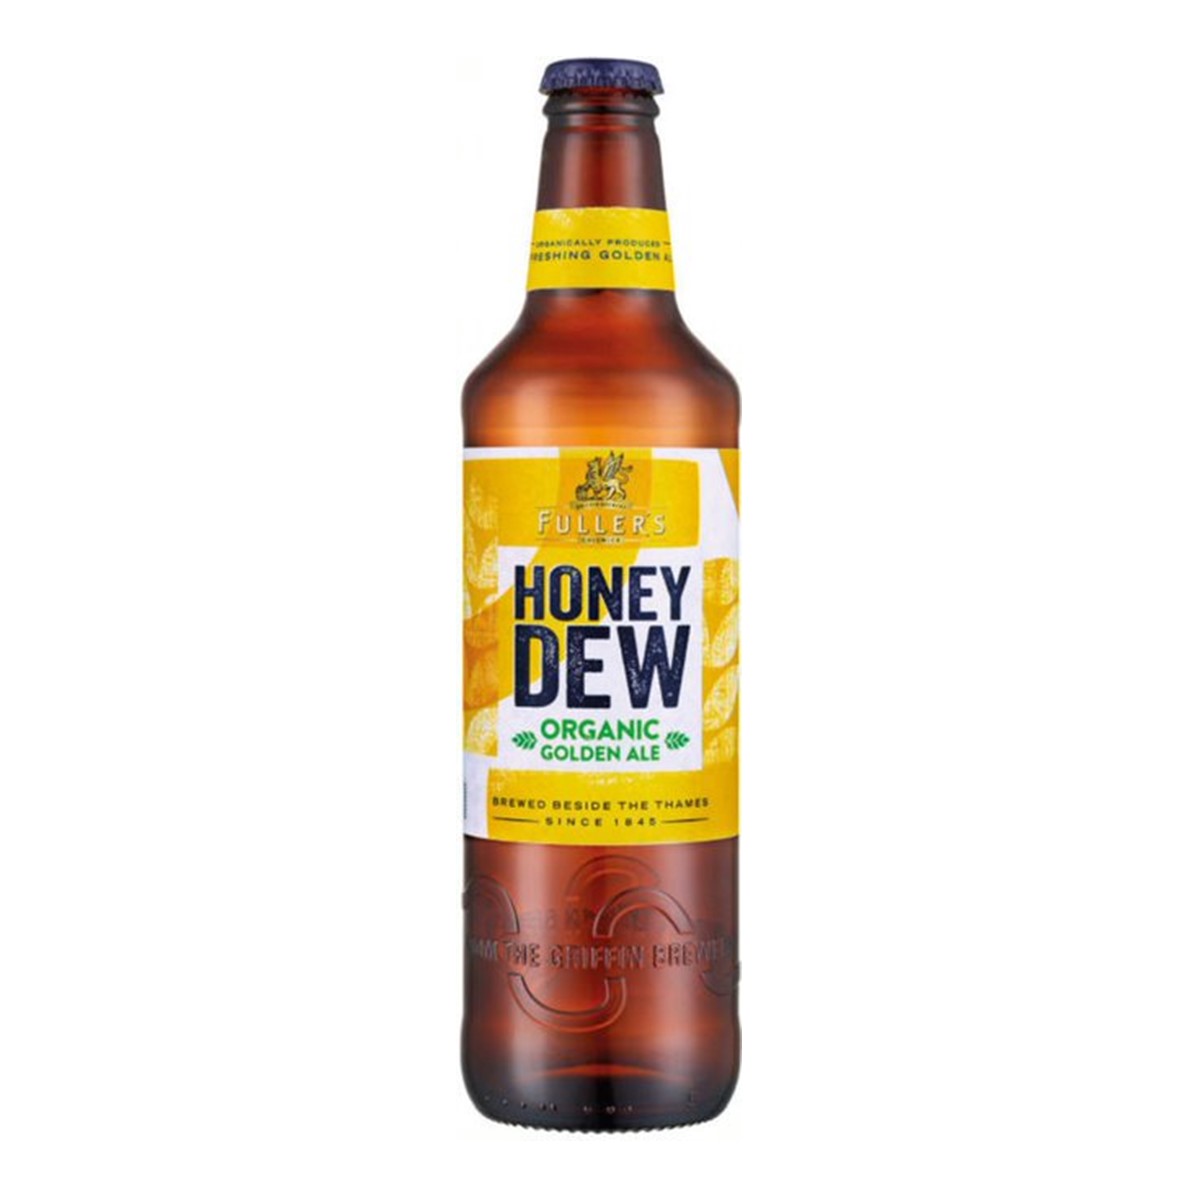 Fuller's Honey Dew Organic Golden Ale - 8x500ml bottles [ORG]